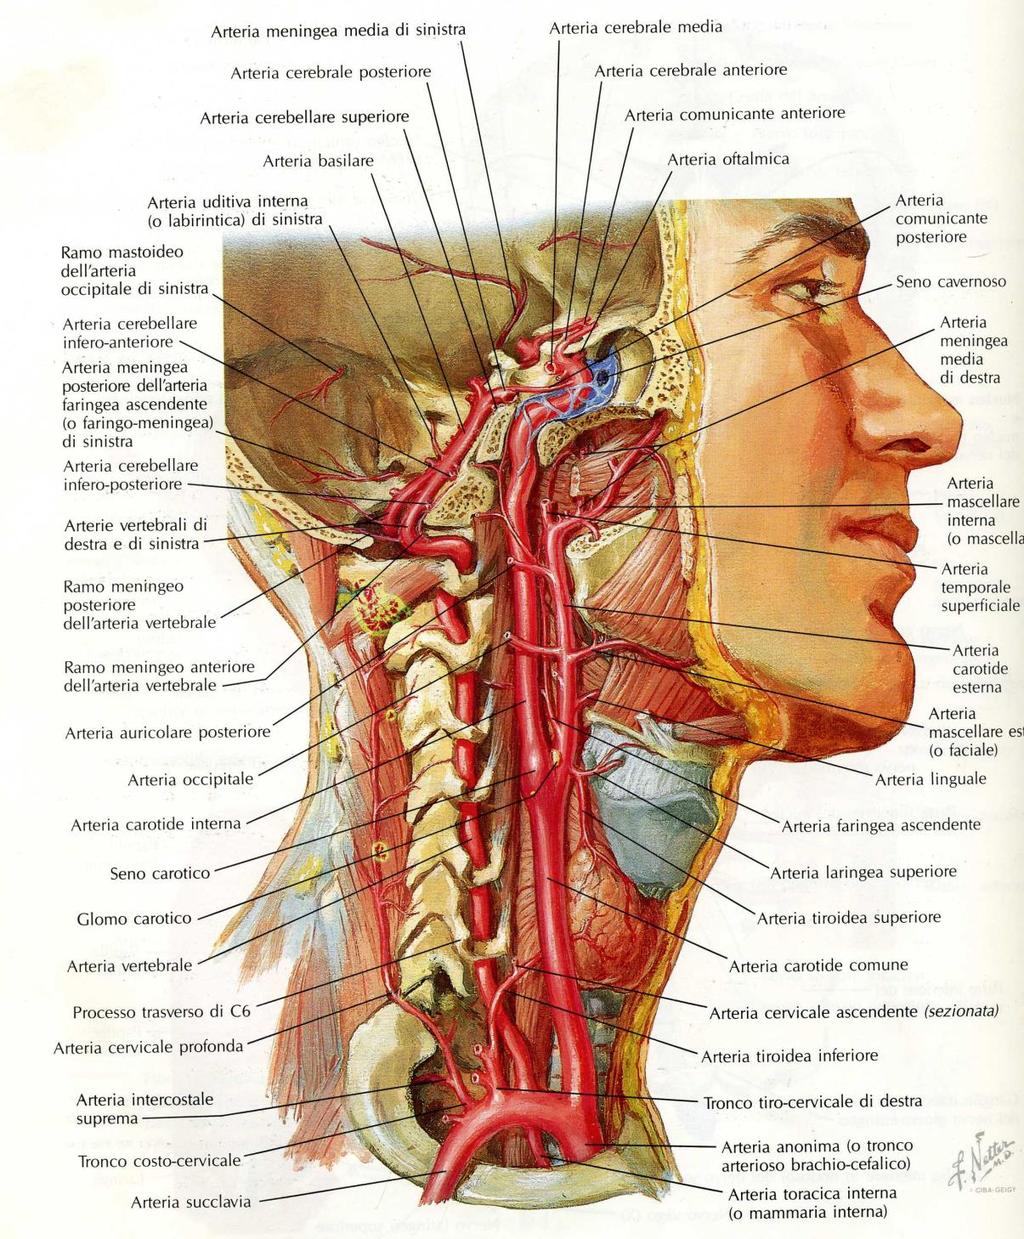 Arteria Vertebrale e Carotide Interna per il Circolo Encefalico L arteria vertebrale percorre i fori trasversari delle